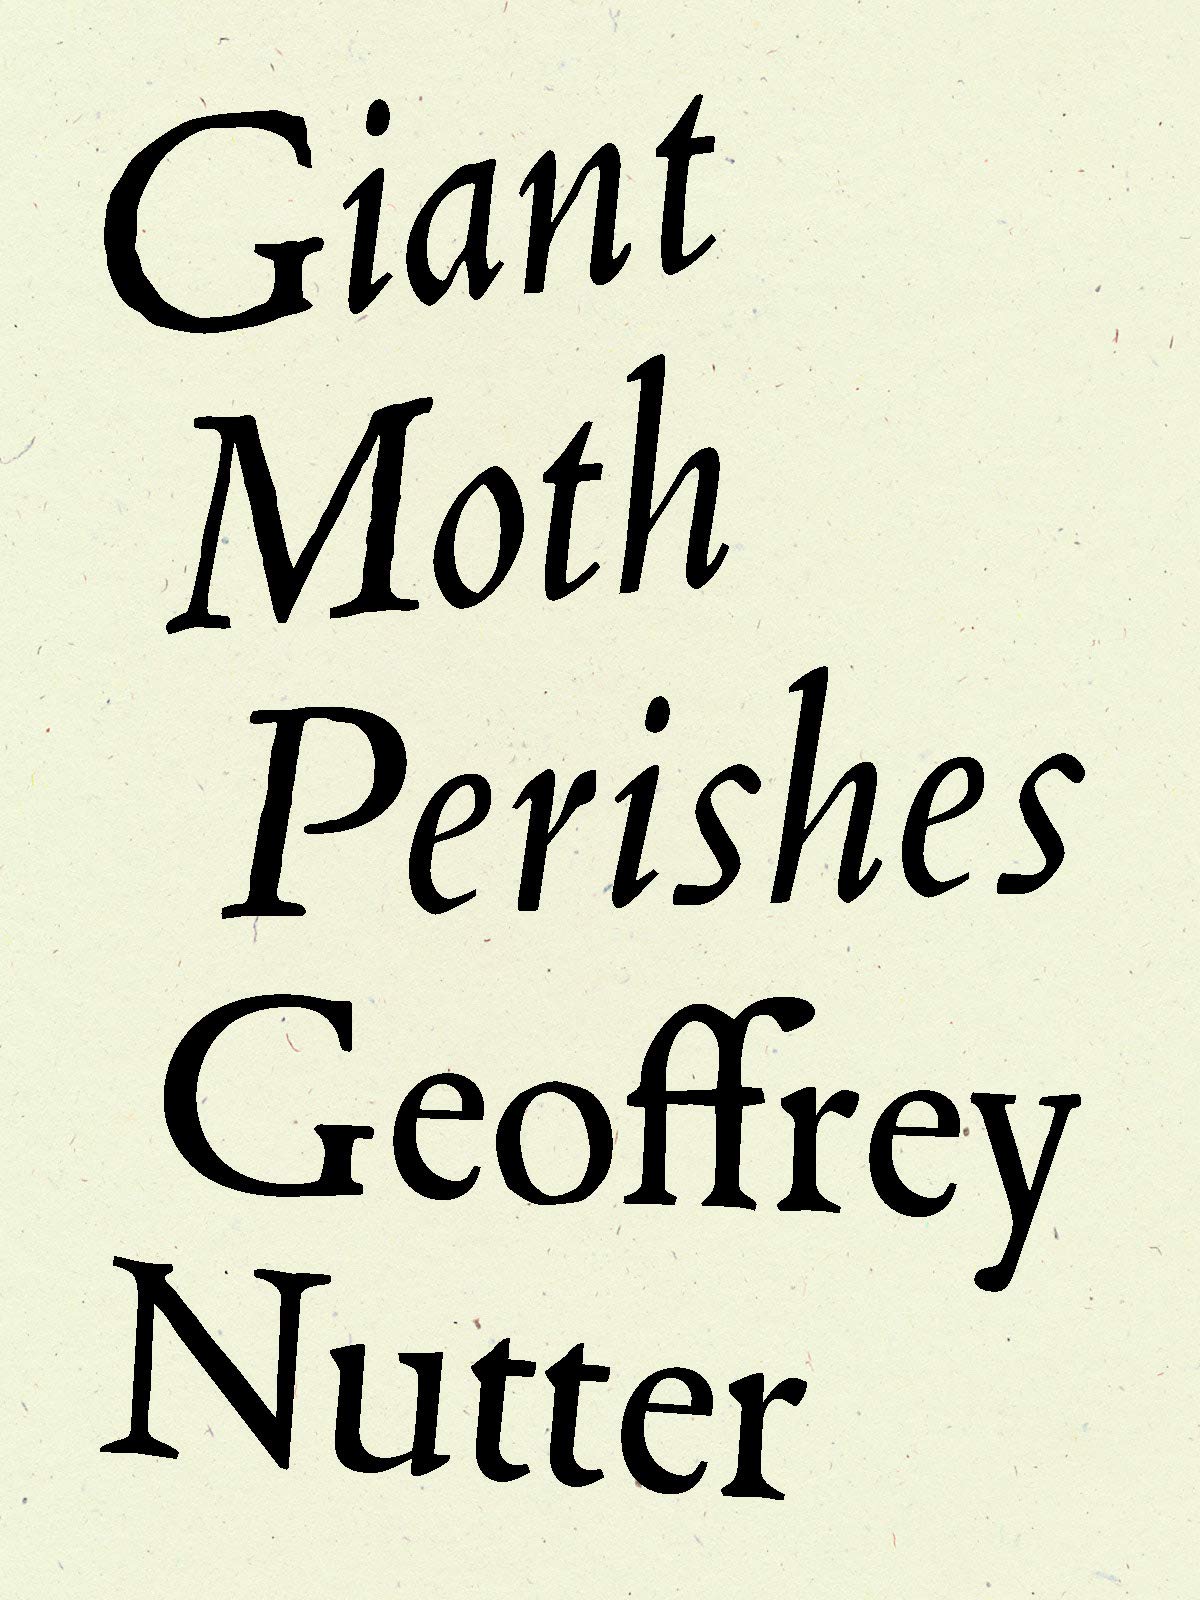 Giant Moth Perishes